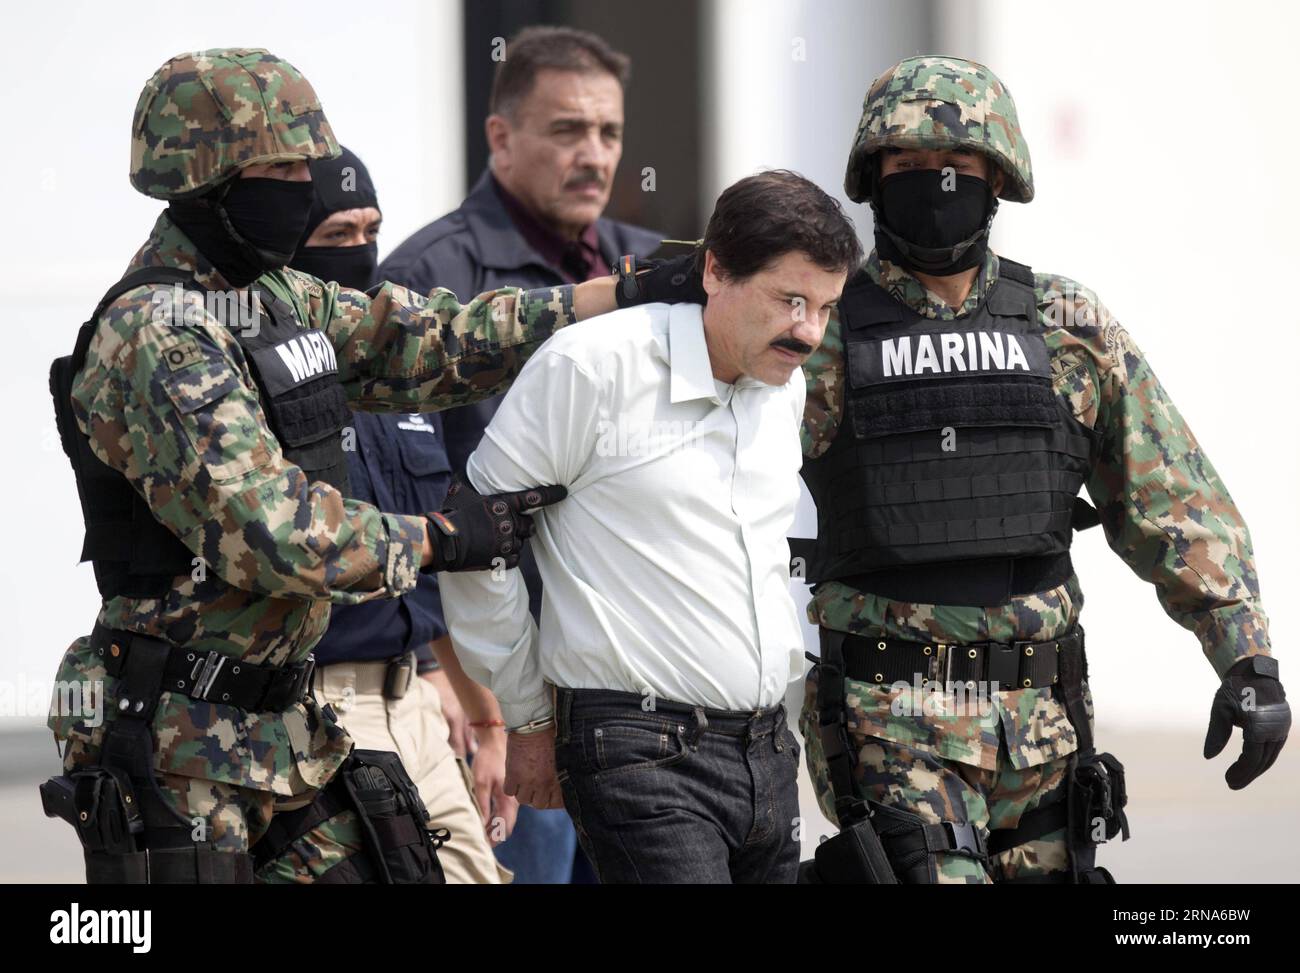 Drogenboss El Chapo Guzman à Mexiko gefasst -- MEXICO -- photo prise le 22 février 2014 montre des membres de la Marine mexicaine qui gardent Joaquin Guzman Loera (C, front), alias El Chapo , lors de sa présentation aux médias à Mexico, capitale du Mexique. Le fugitif roi de la drogue Joaquin El Chapo Guzman a été repris plusieurs mois après son évasion de prison, a déclaré le président Enrique Pena Nieto le 8 janvier 2016. (fnc) MEXICO-MEXICO CITY-GUZMAN LOERA-RECAPTURE DavidxdexlaxPaz PUBLICATIONxNOTxINxCHN Banque D'Images